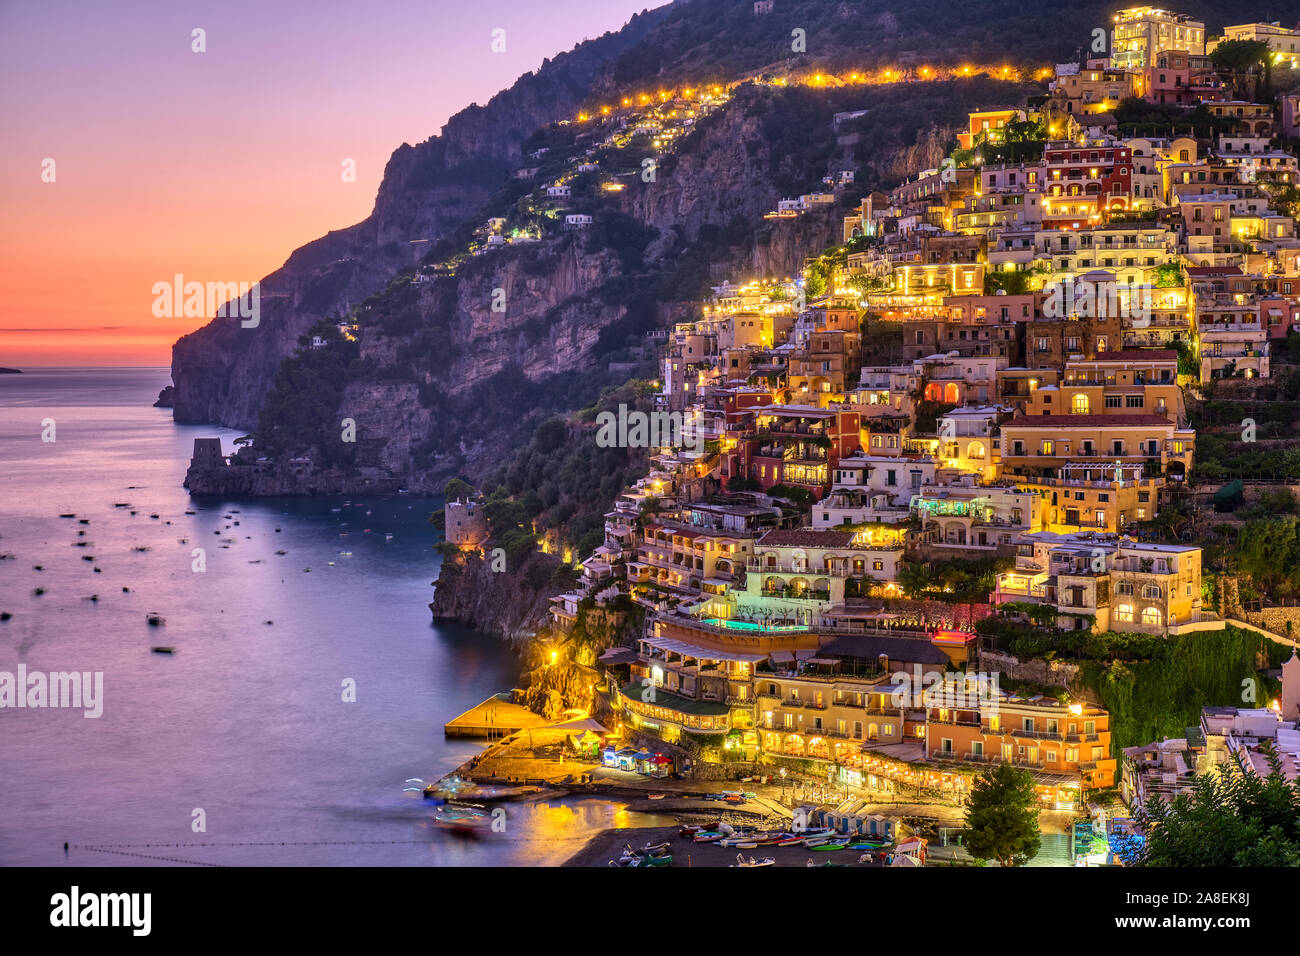 The famous village of Positano on the italian Amalfi coast after sunset Stock Photo